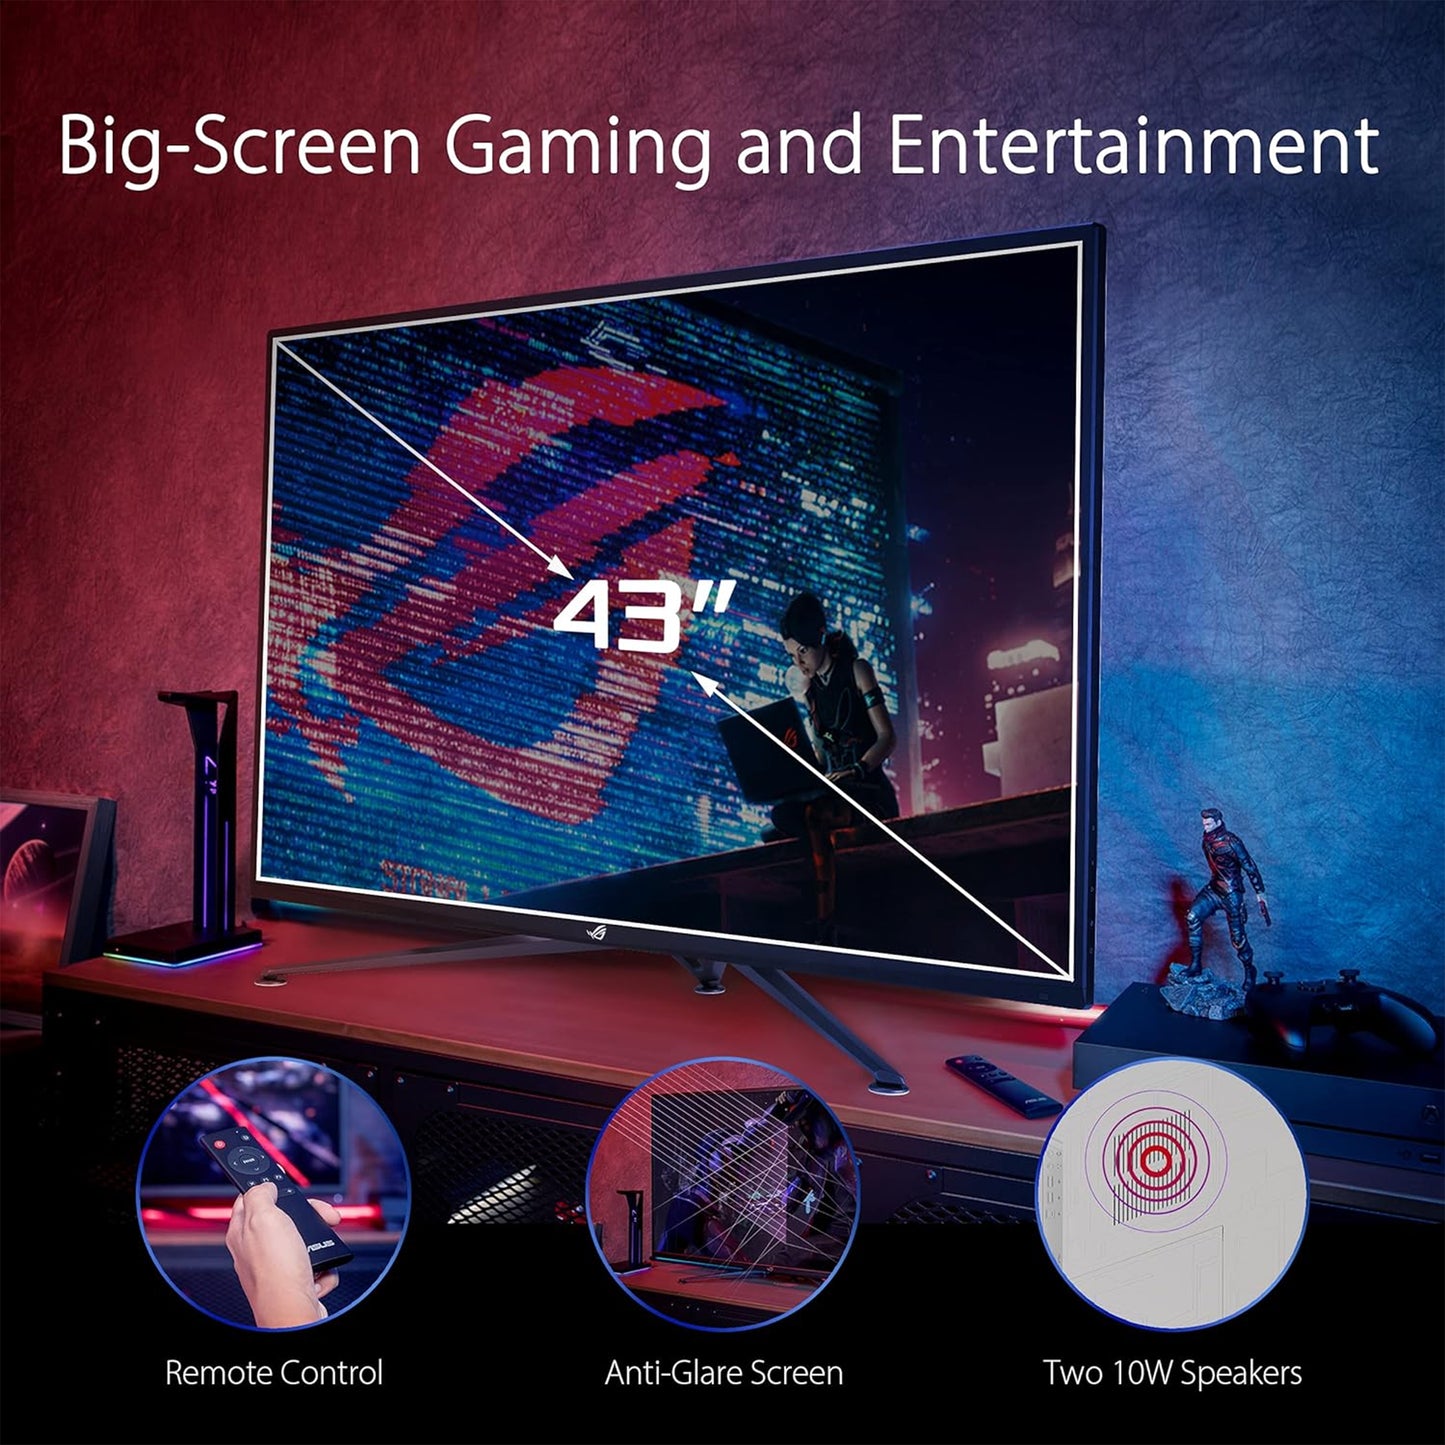 ASUS 43" 4K 144Hz 1ms Gaming Monitor - ROG Strix, HDR1000, FreeSync Premium Pro